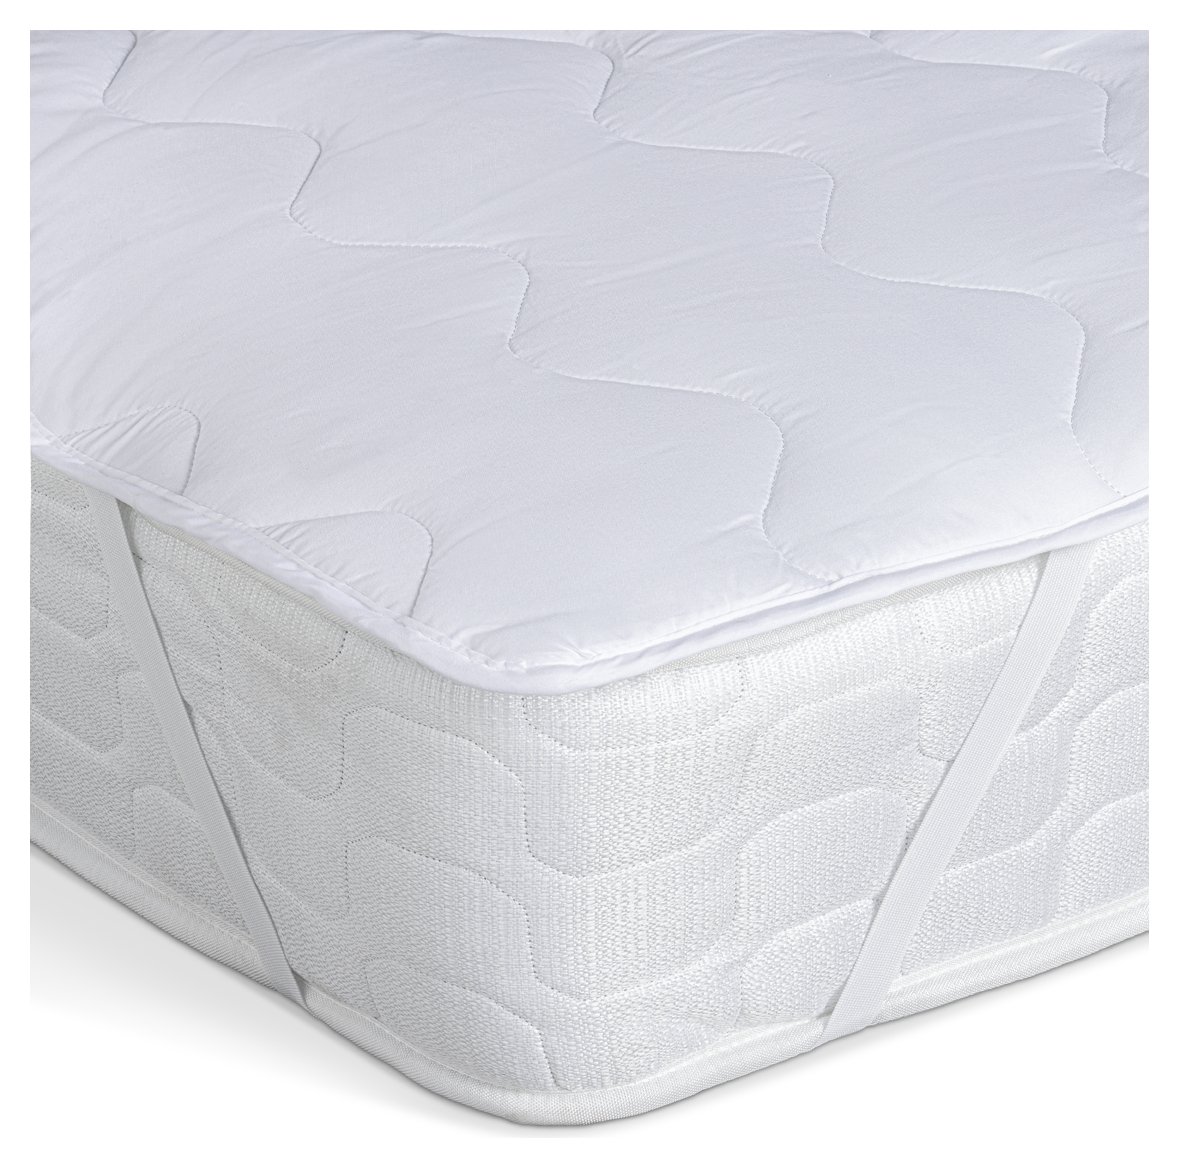 cot bed mattress topper argos